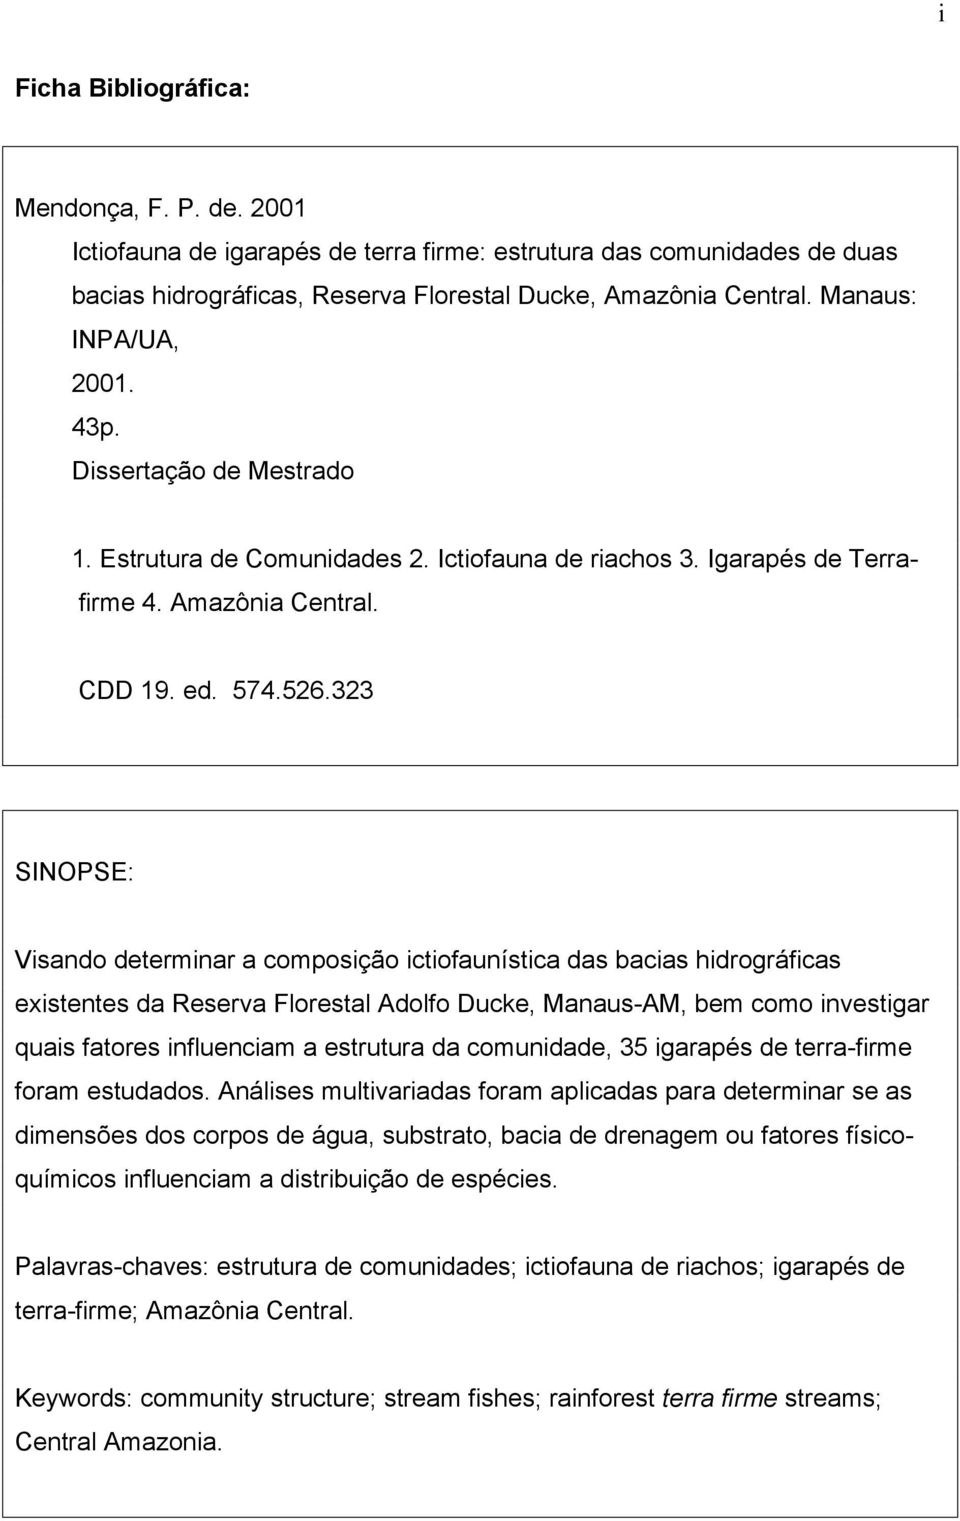 323 SINOPSE: Visando determinar a composição ictiofaunística das bacias hidrográficas existentes da Reserva Florestal Adolfo Ducke, Manaus-AM, bem como investigar quais fatores influenciam a